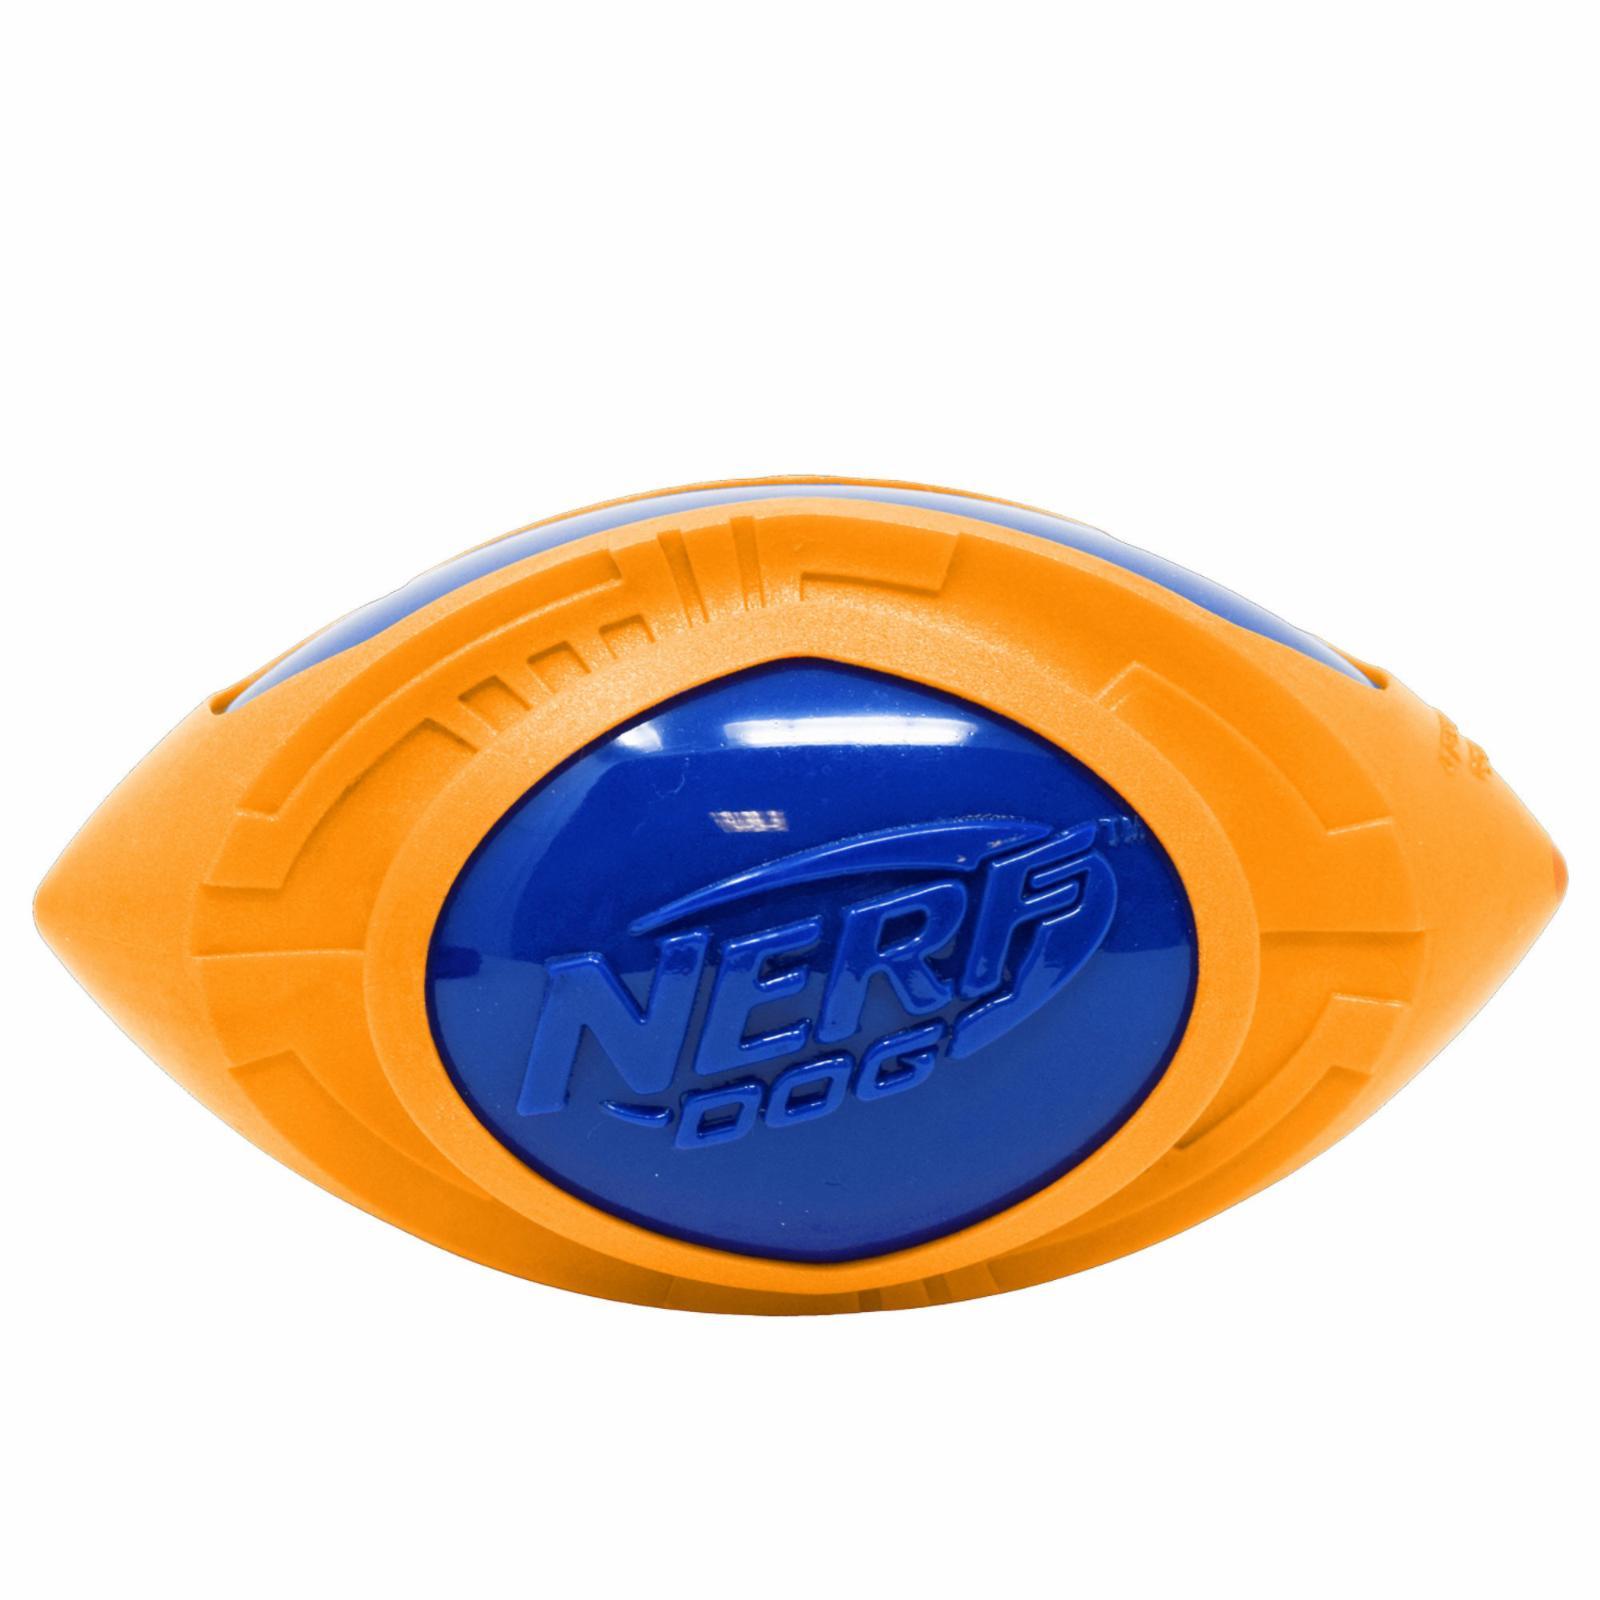 Мяч для регби из термопластичной резины, 18 см (серия "Мегатон"), (синий/оранжевый). 18 см